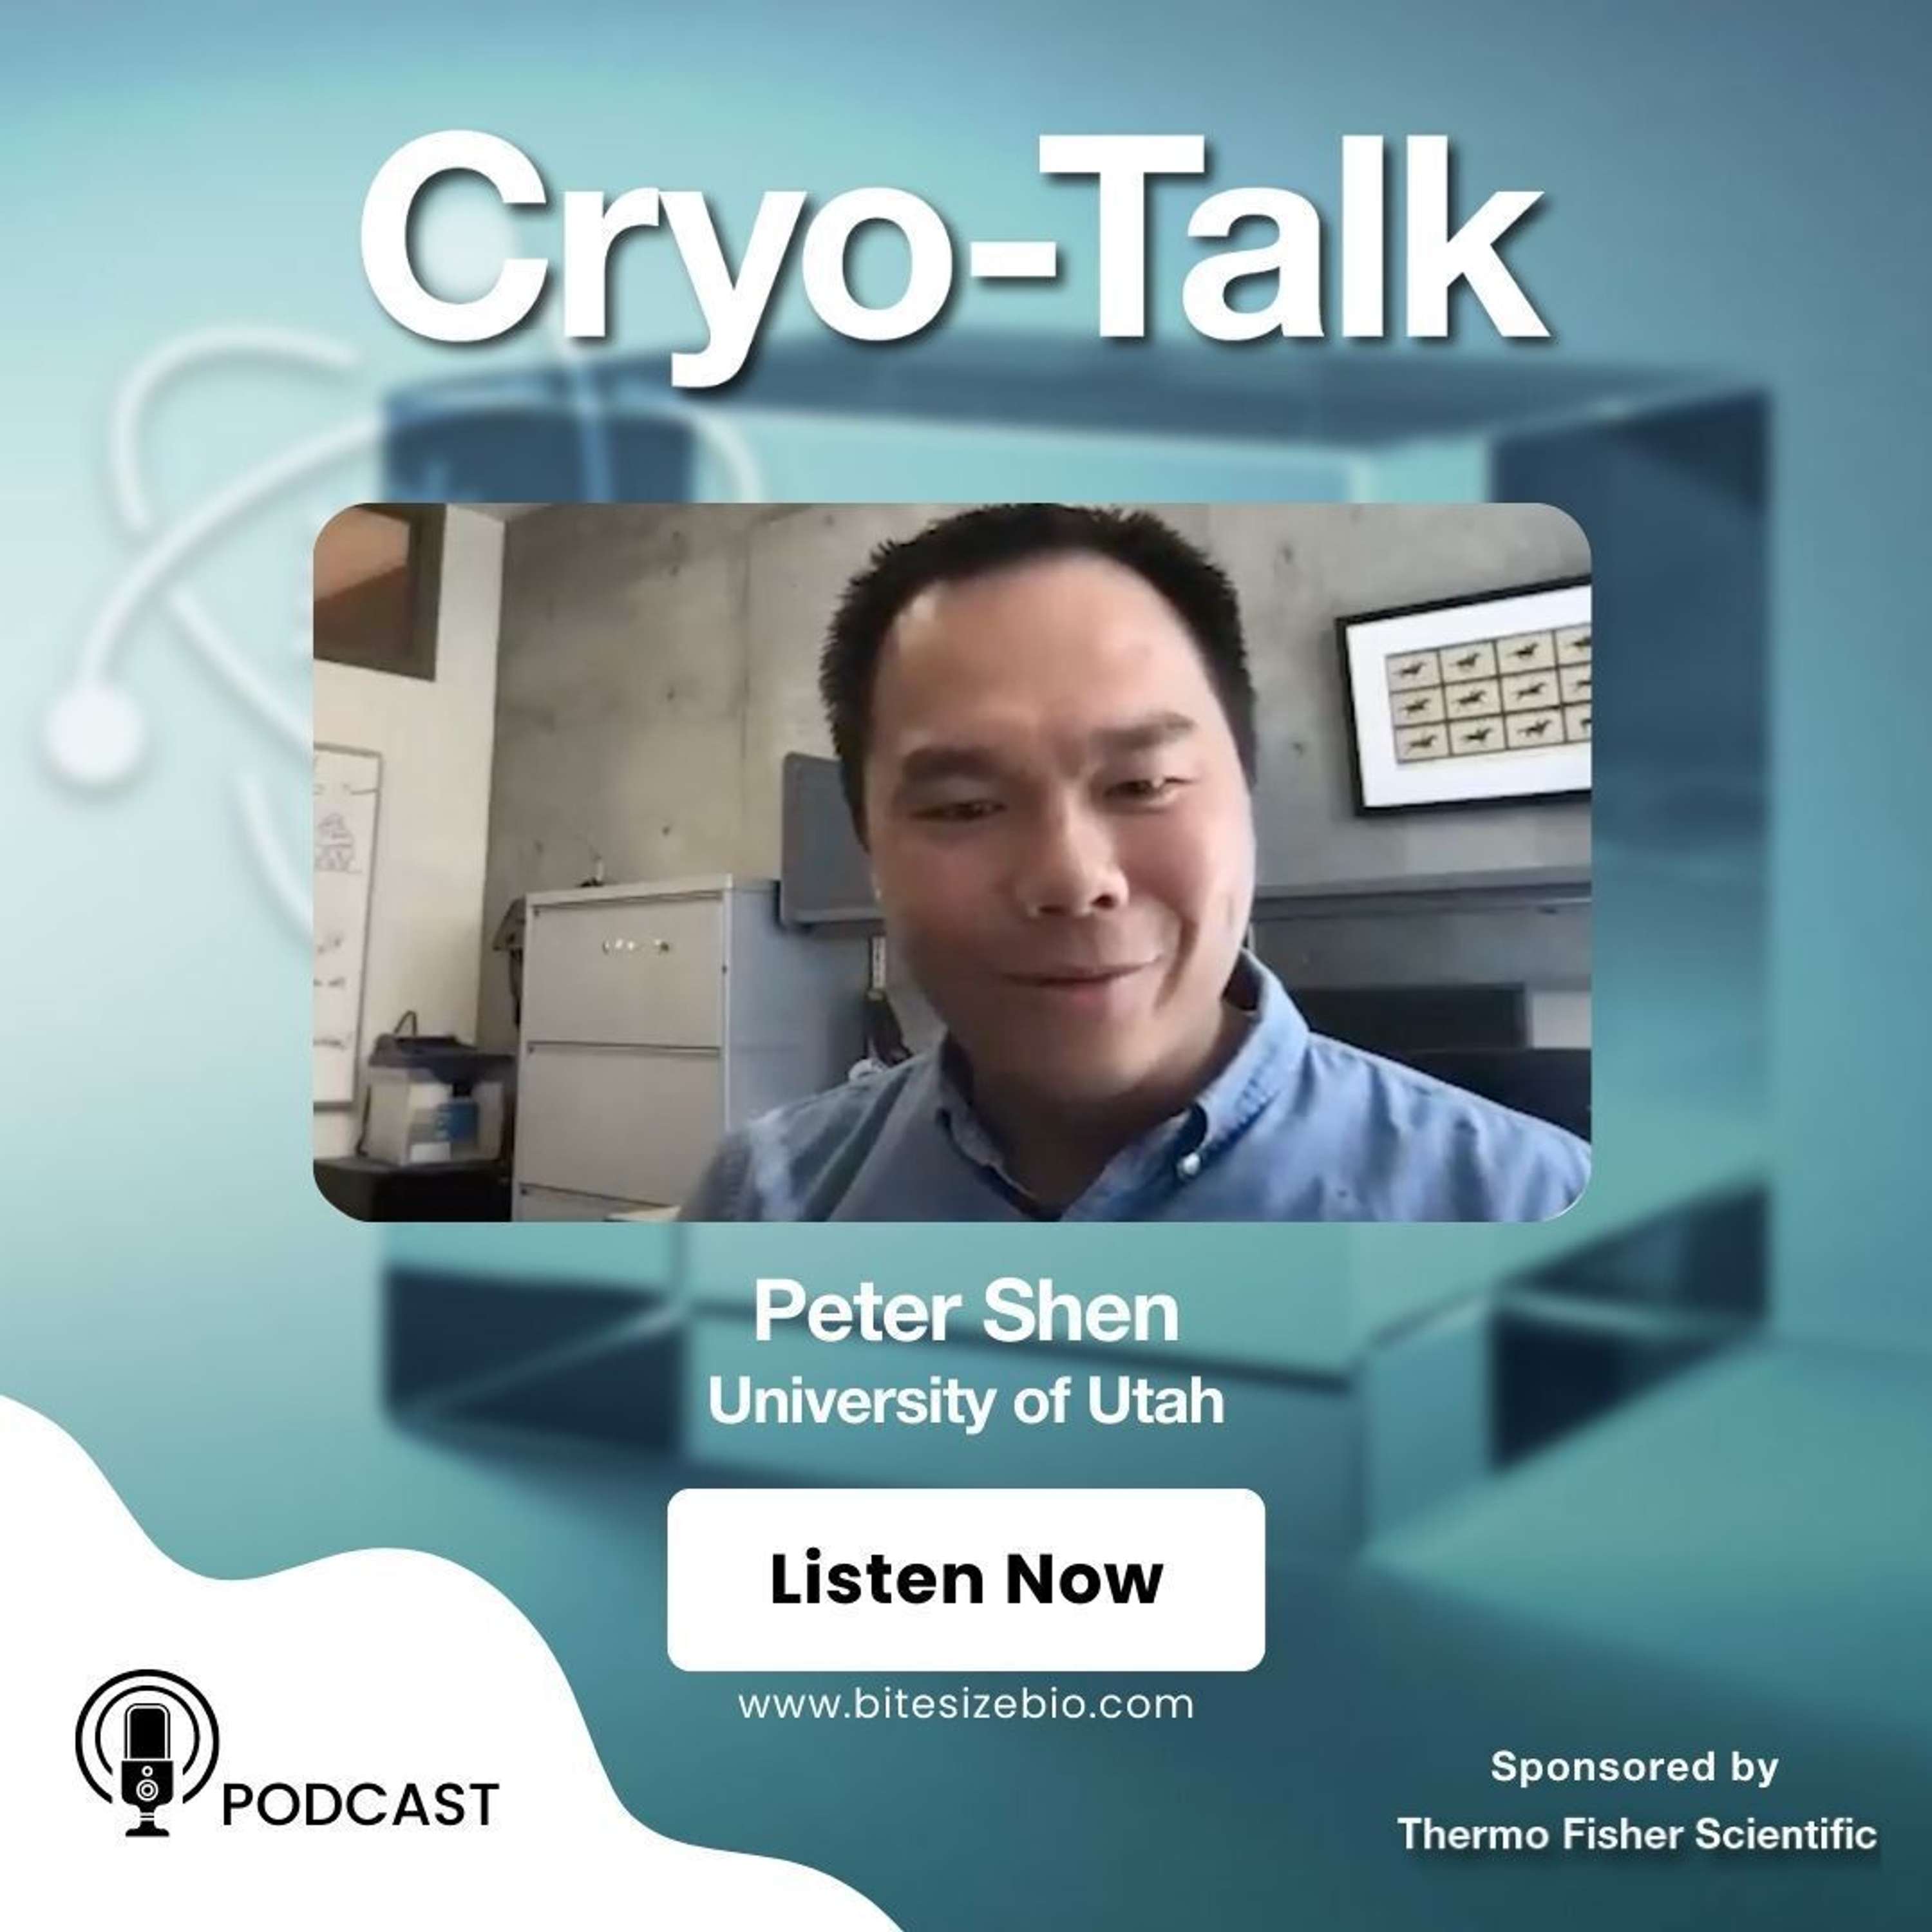 Cryo-Talk interviews Peter Shen (University of Utah)